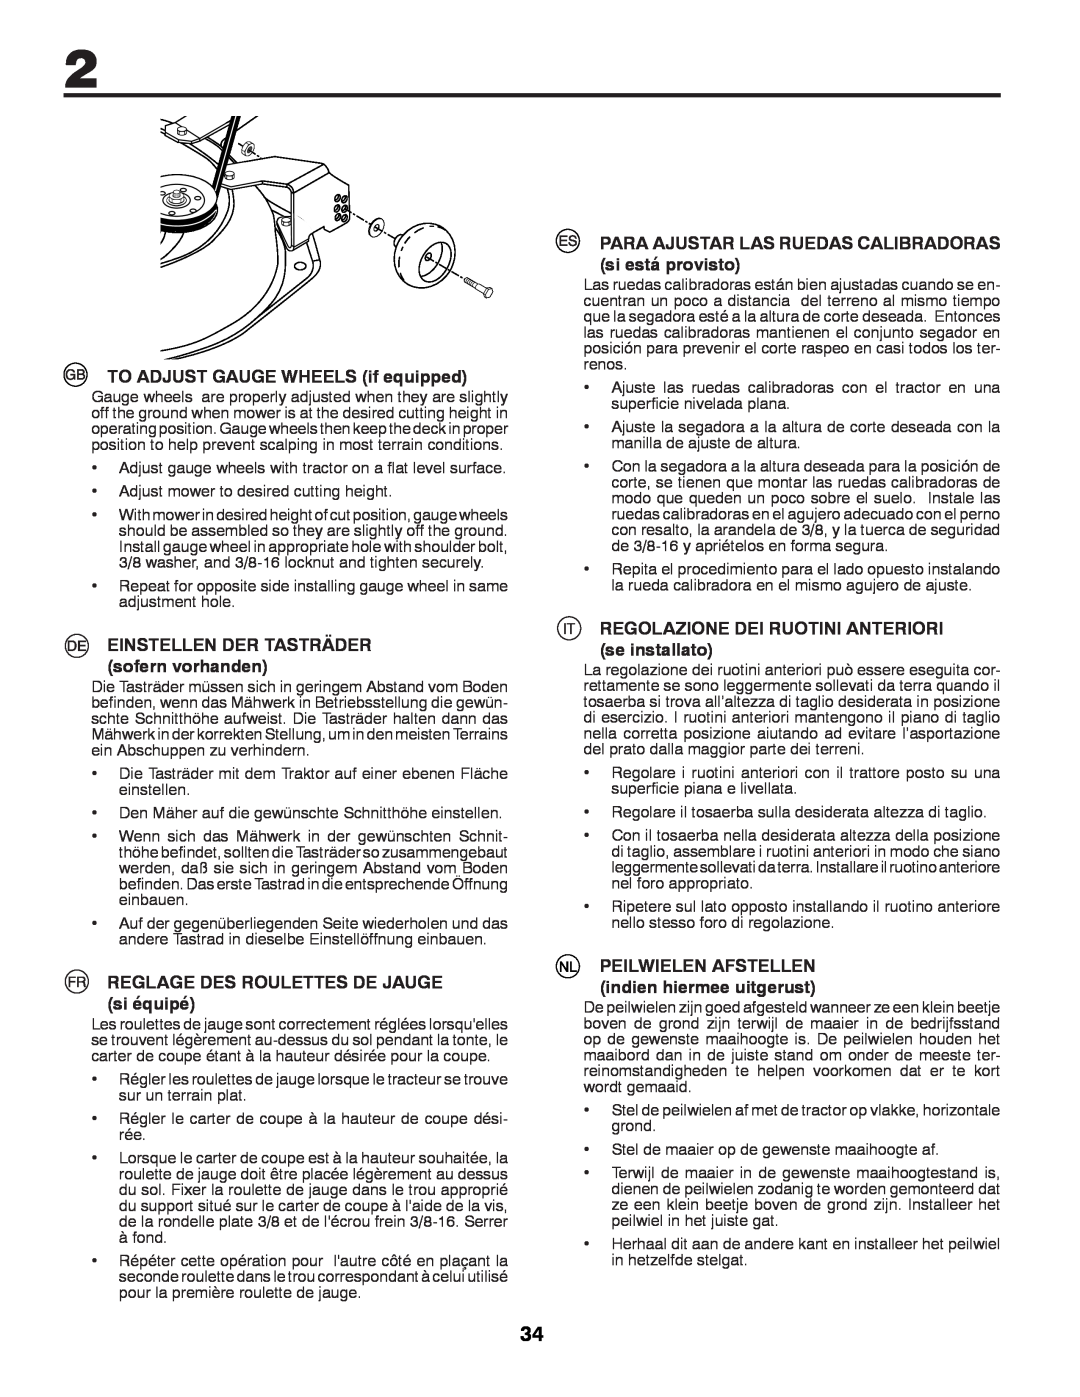 Partner Tech P200107HRB instruction manual TO ADJUST GAUGE WHEELS if equipped, EINSTELLEN DER TASTRÄDER sofern vorhanden 